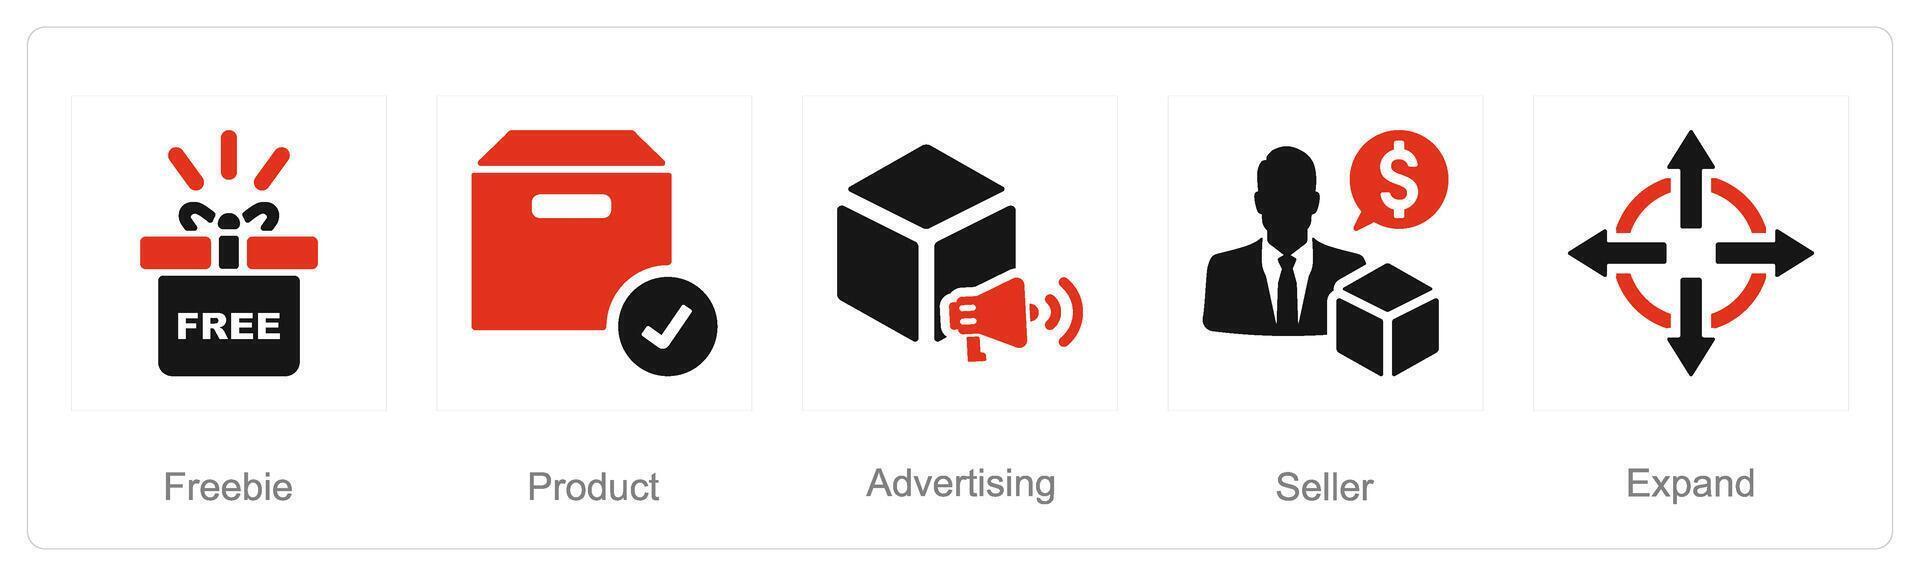 en uppsättning av 5 öka försäljning ikoner som gratisgrunka, produkt, reklam vektor